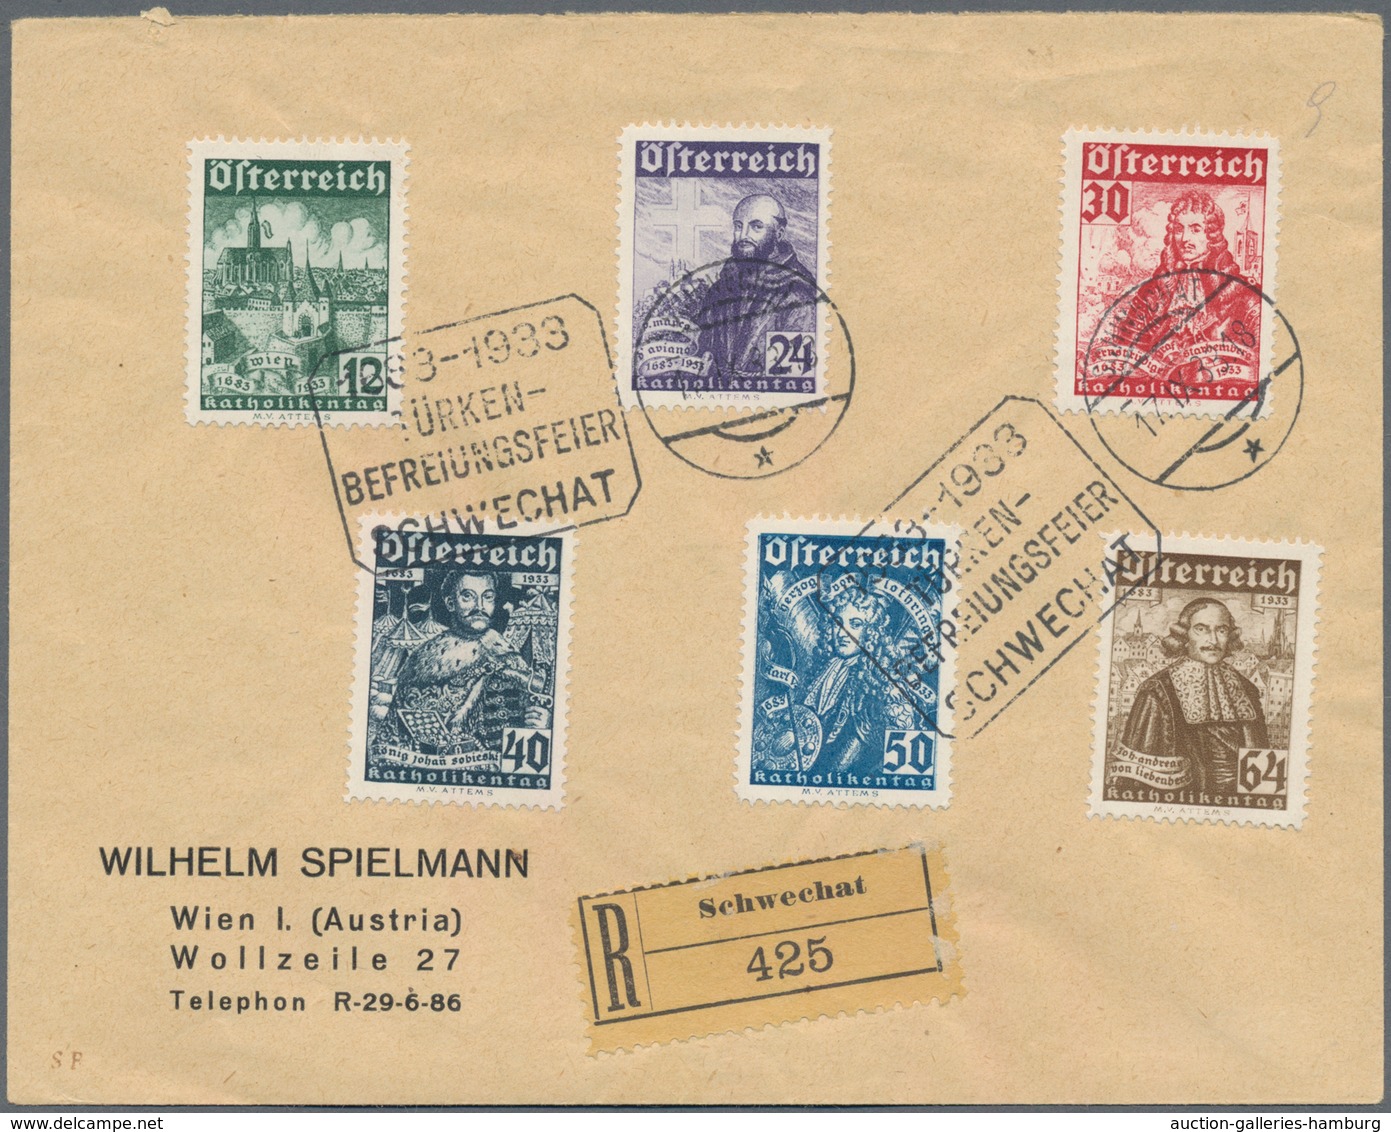 Österreich: 1933, FIS-Wettkämpfe, WIPA Und Katholikentag, Drei Ausgaben Je Auf Beleg Mit SST, Für 55 - Cartas & Documentos